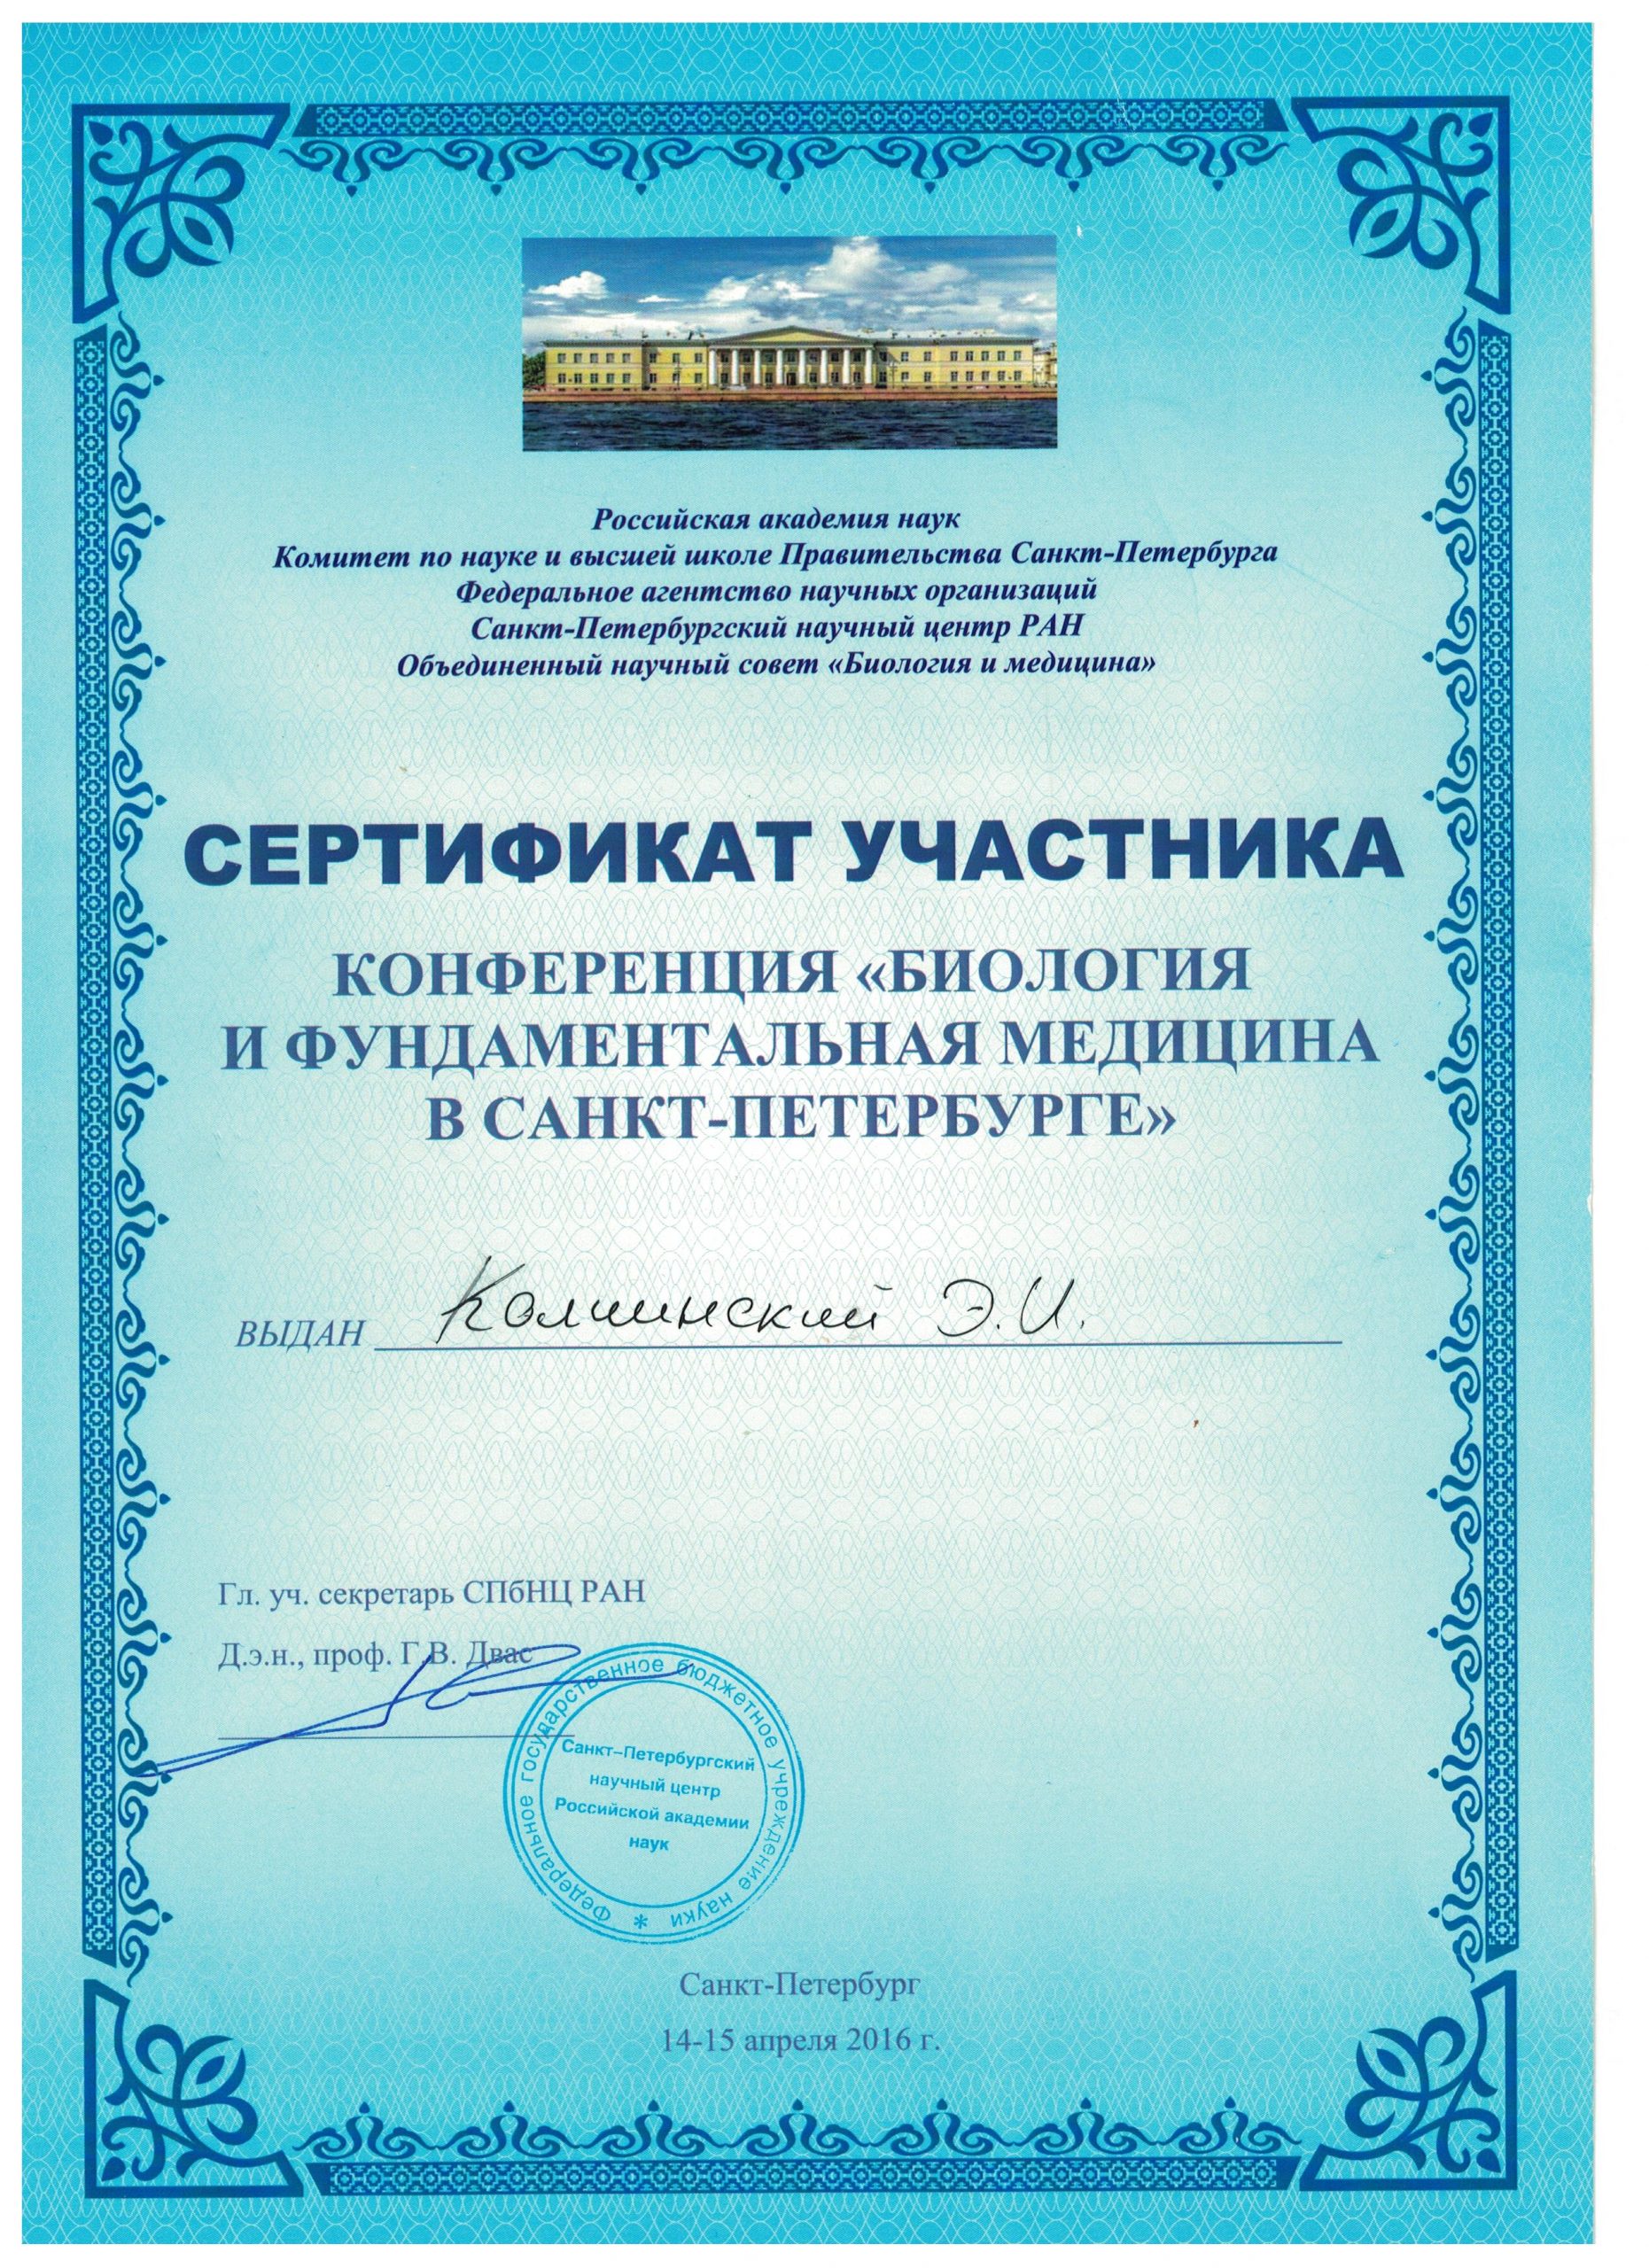 Сертификат участника конференции (2016)